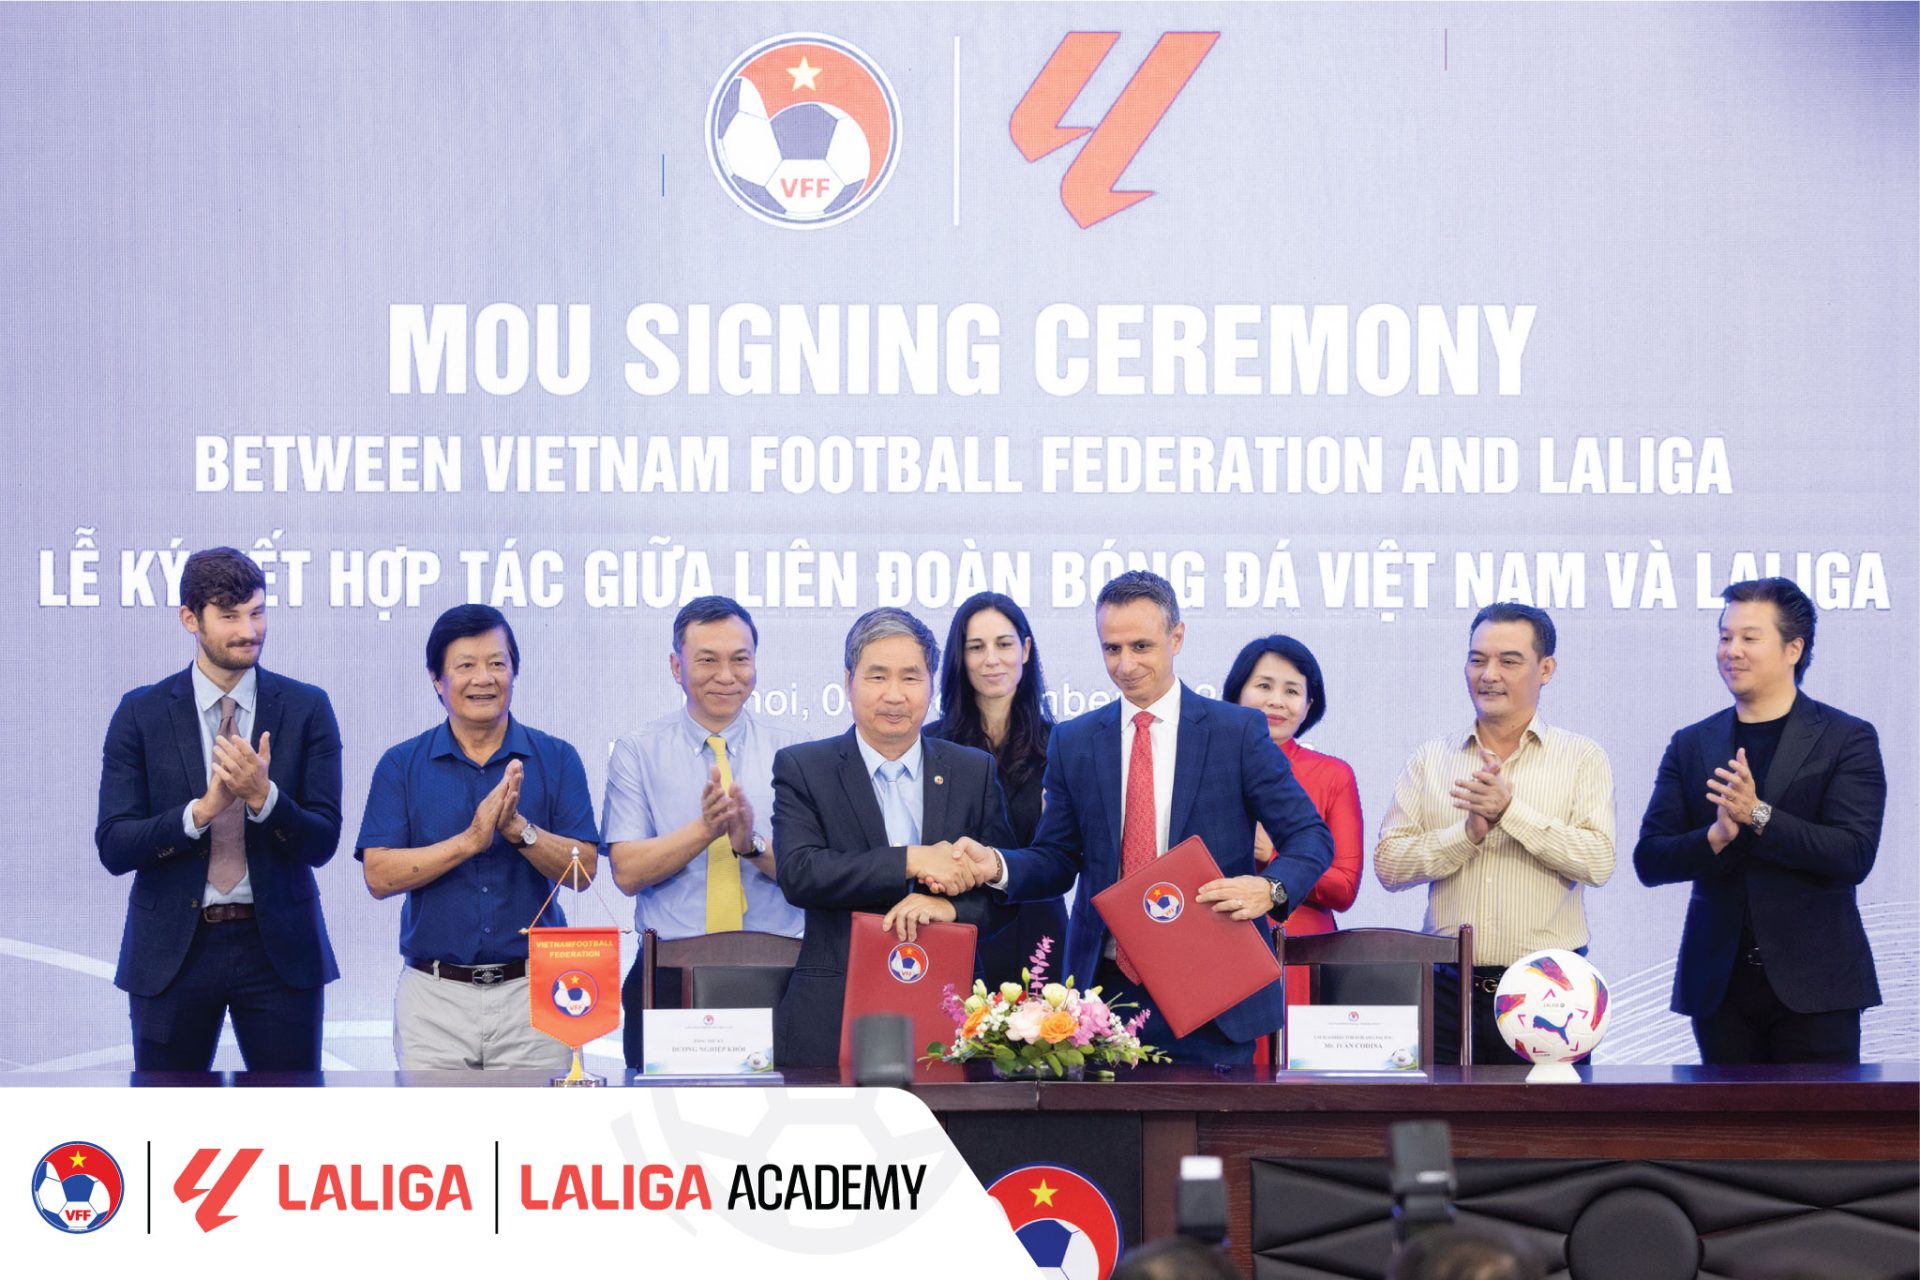 Buổi lễ ký kết đánh dấu sự hợp tác giữa LaLiga và VFF tại Trụ sở Liên Đoàn Bóng đá Việt Nam (sáng 06/09 tại Hà Nội)